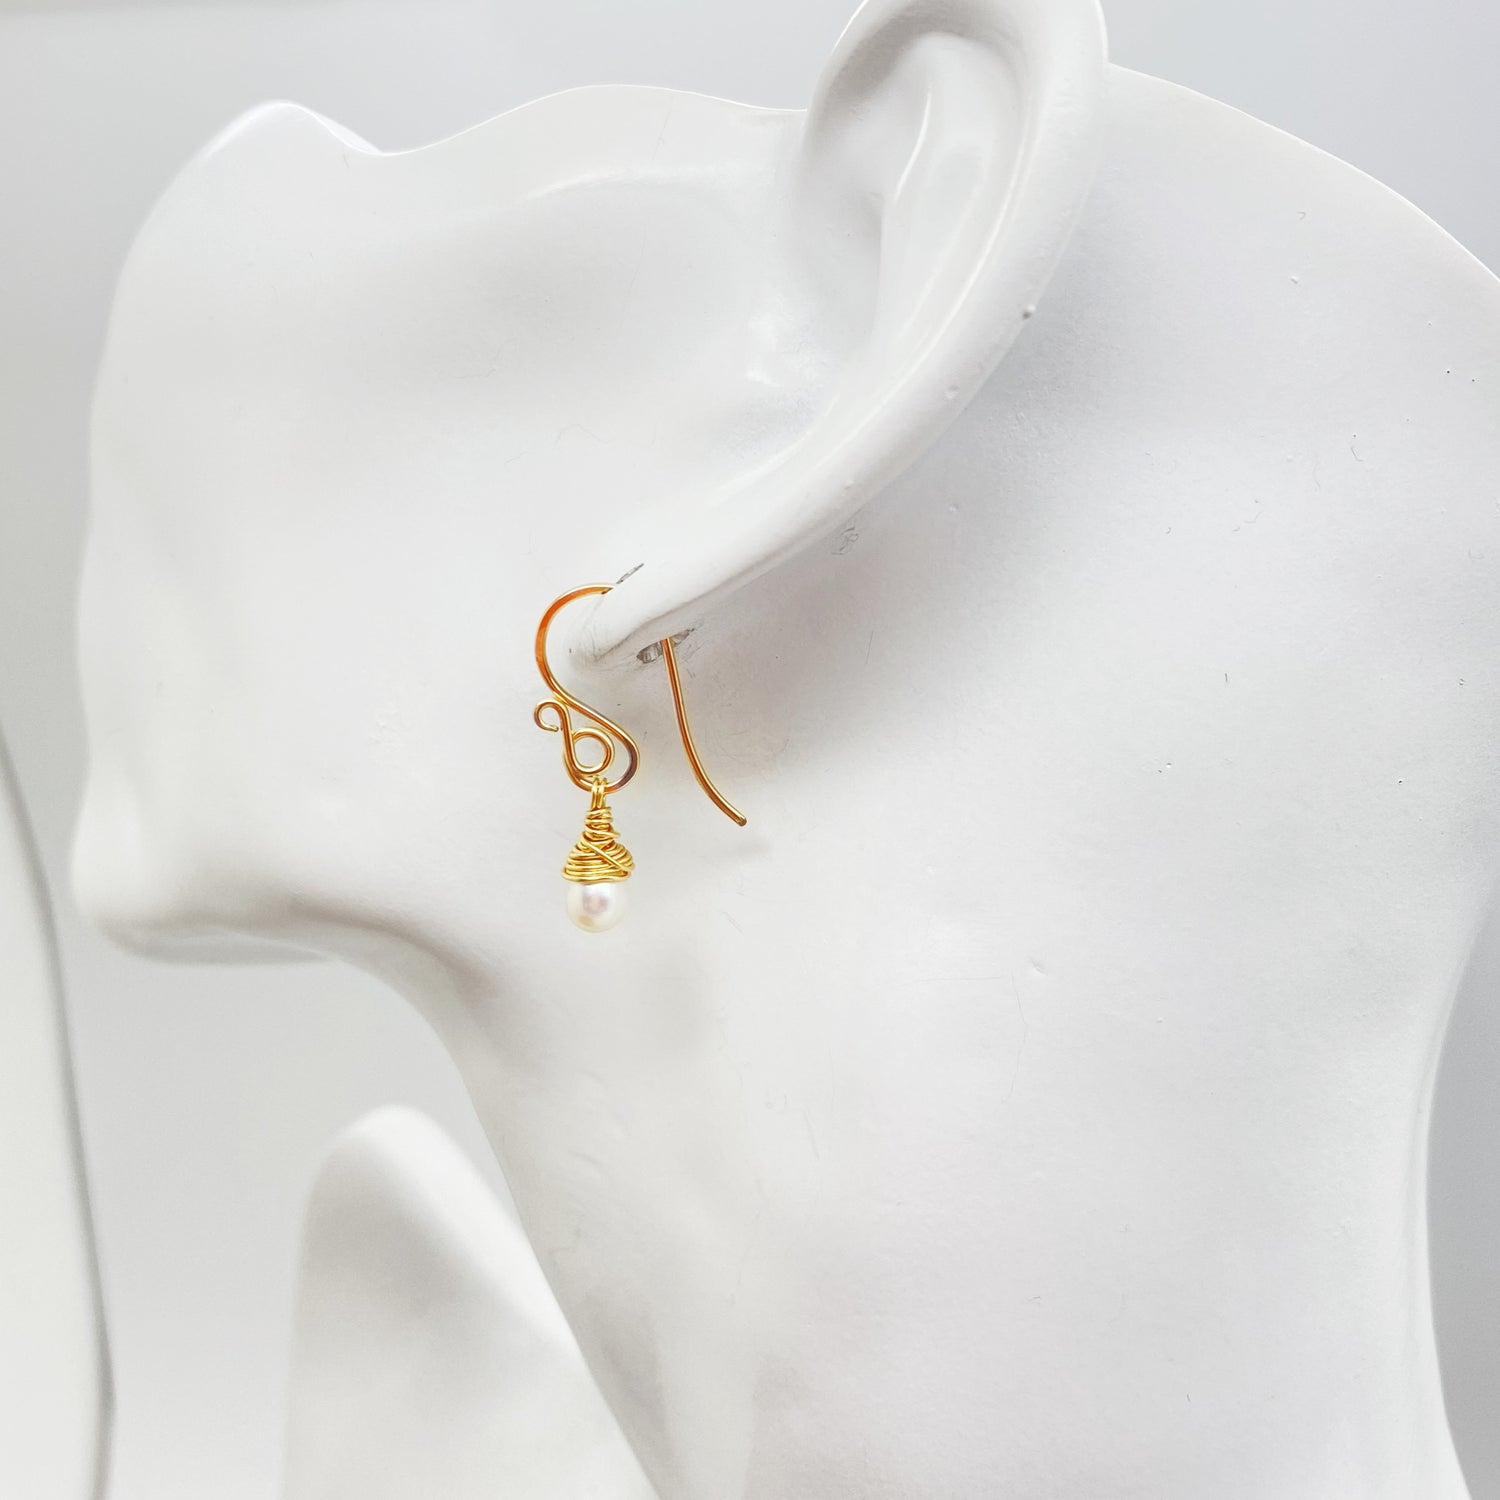 Stijlvolle gold filled oorbellen met zoetwaterparel